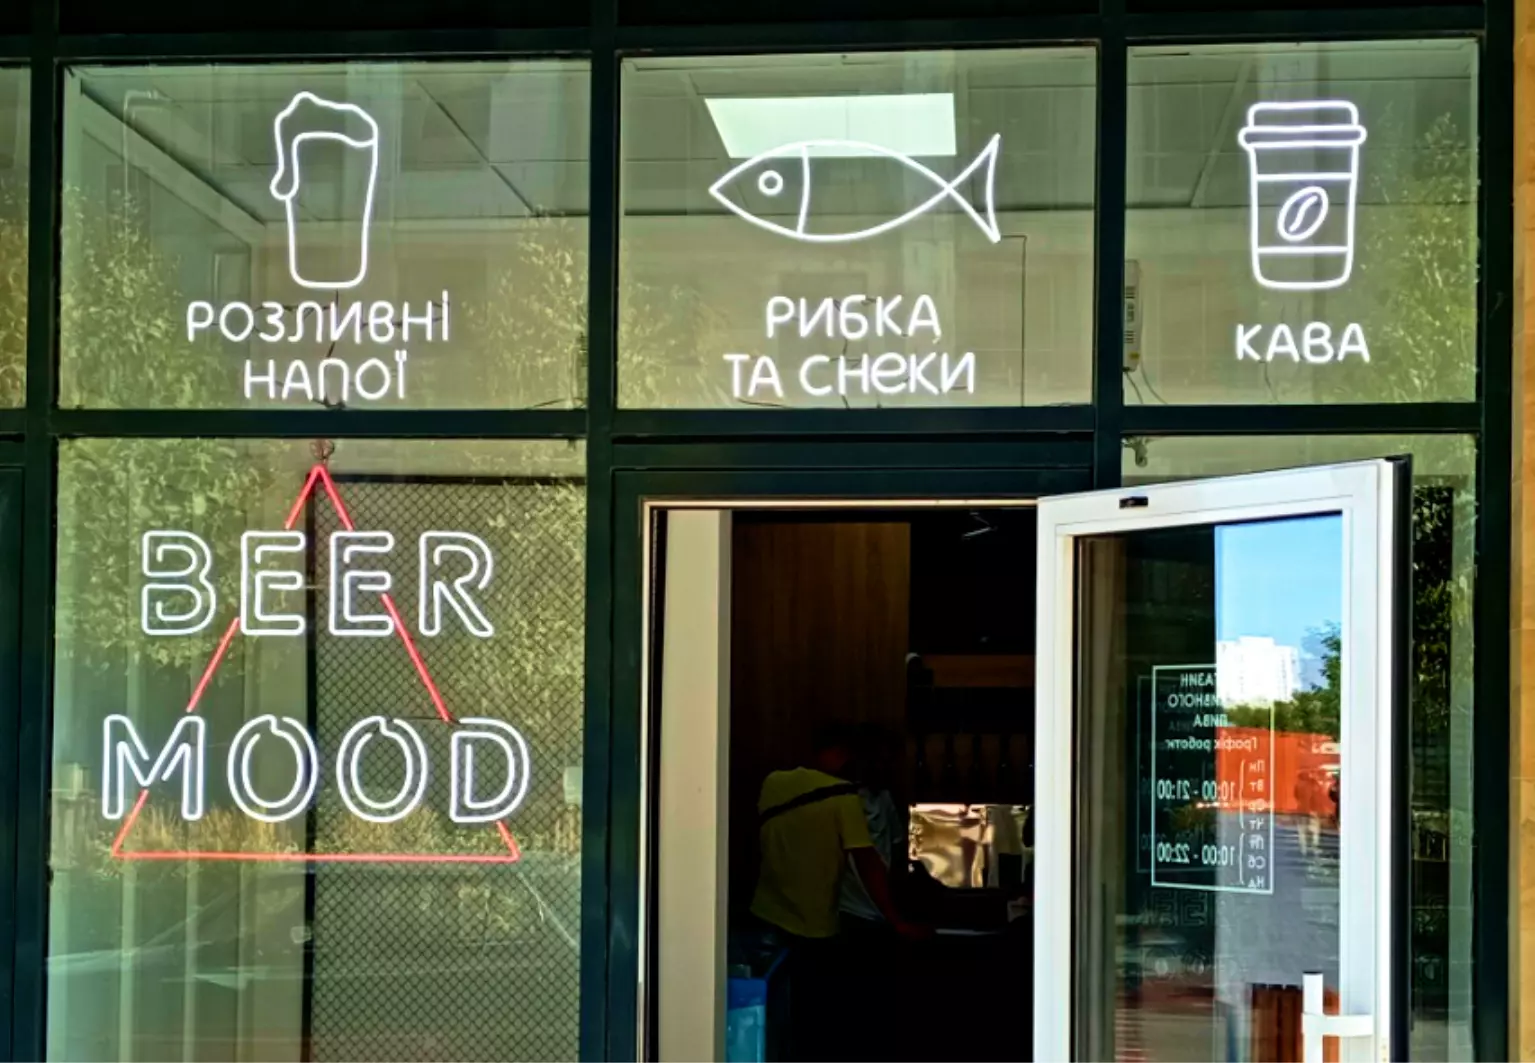 динамическая неоновая реклама для магазина пива